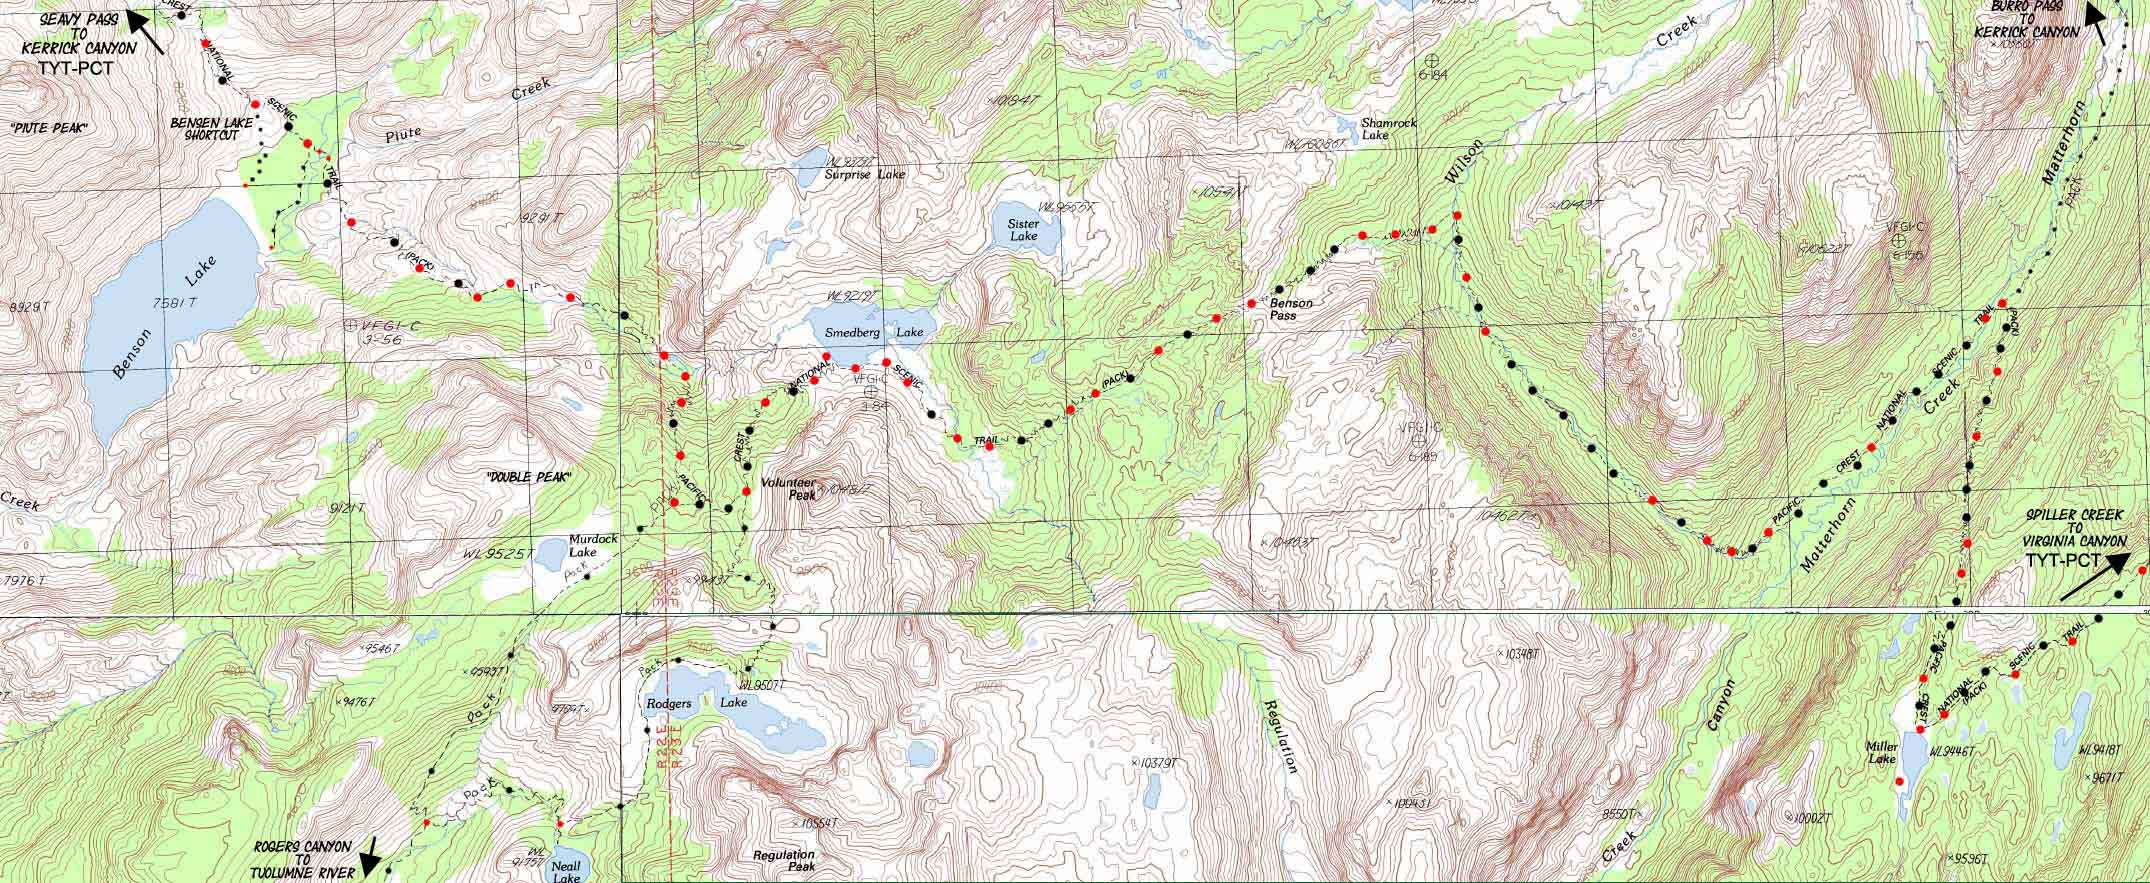 Bensen Lake to Miller Lake Yosemite topo hiking map.